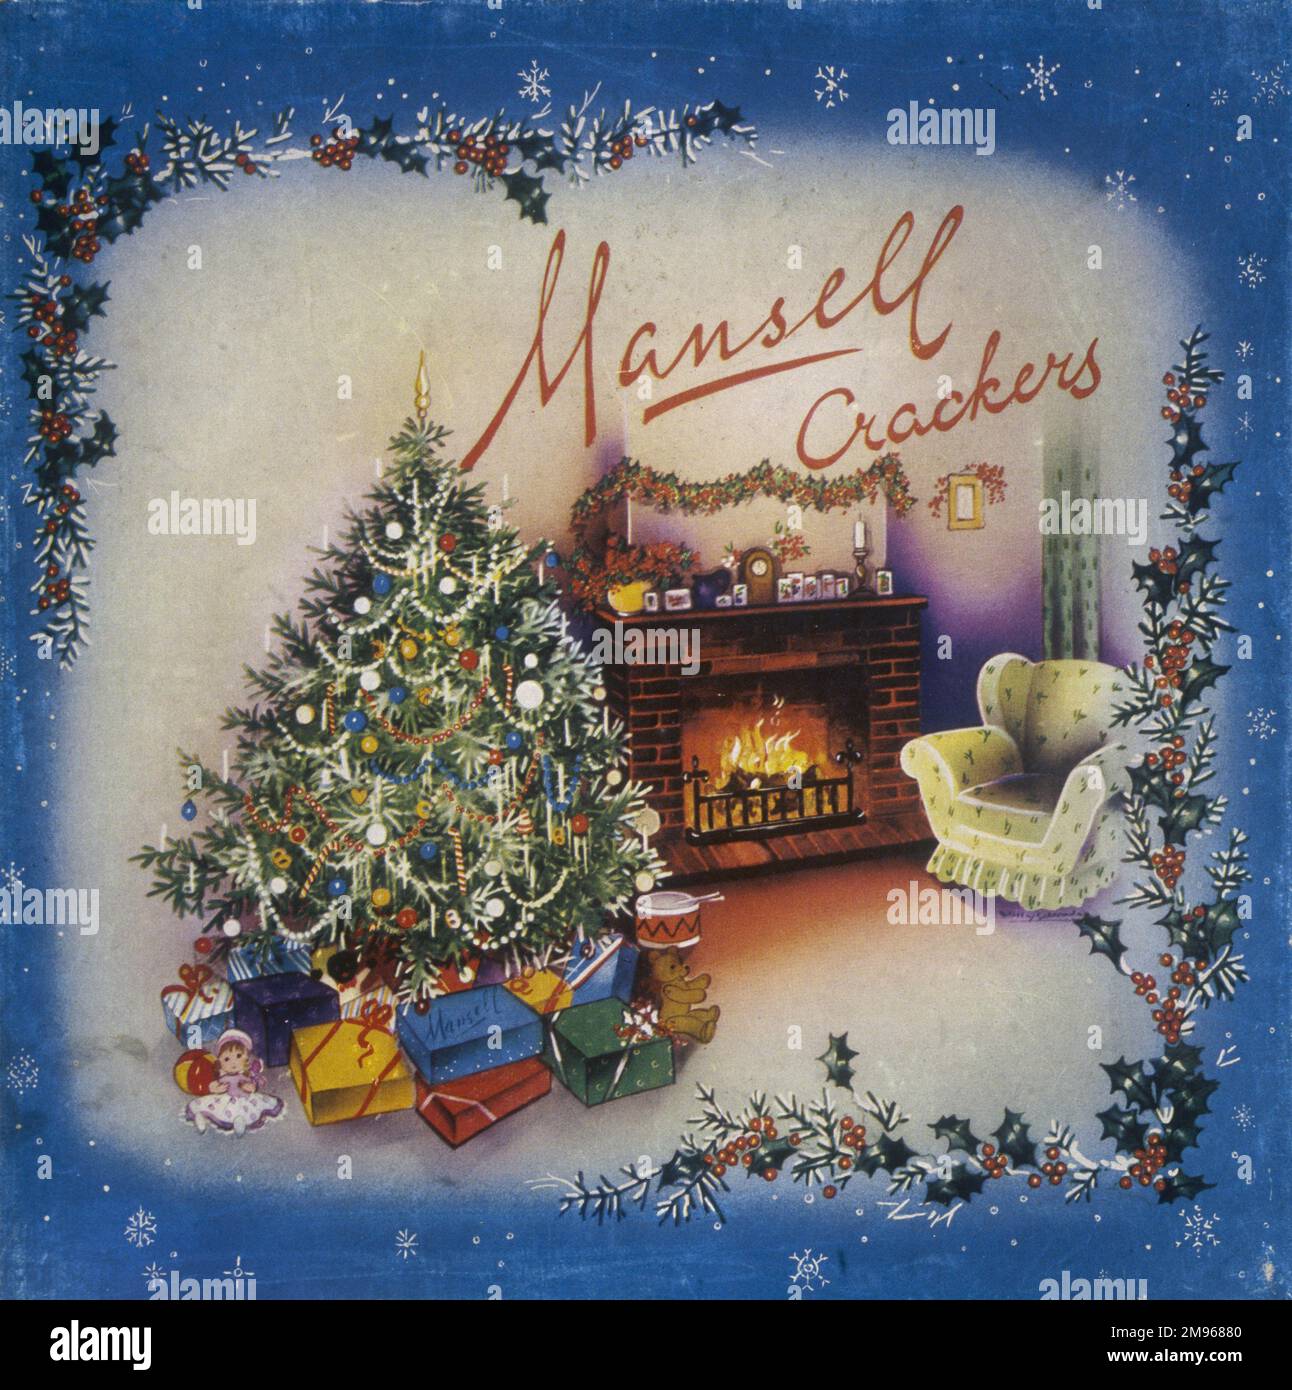 Design di un'etichetta per una scatola di cracker natalizi Mansell caratterizzata da un'accogliente scena festiva al coperto con un scintillante albero di Natale e una comoda poltrona accanto a un fuoco ruggente. Foto Stock